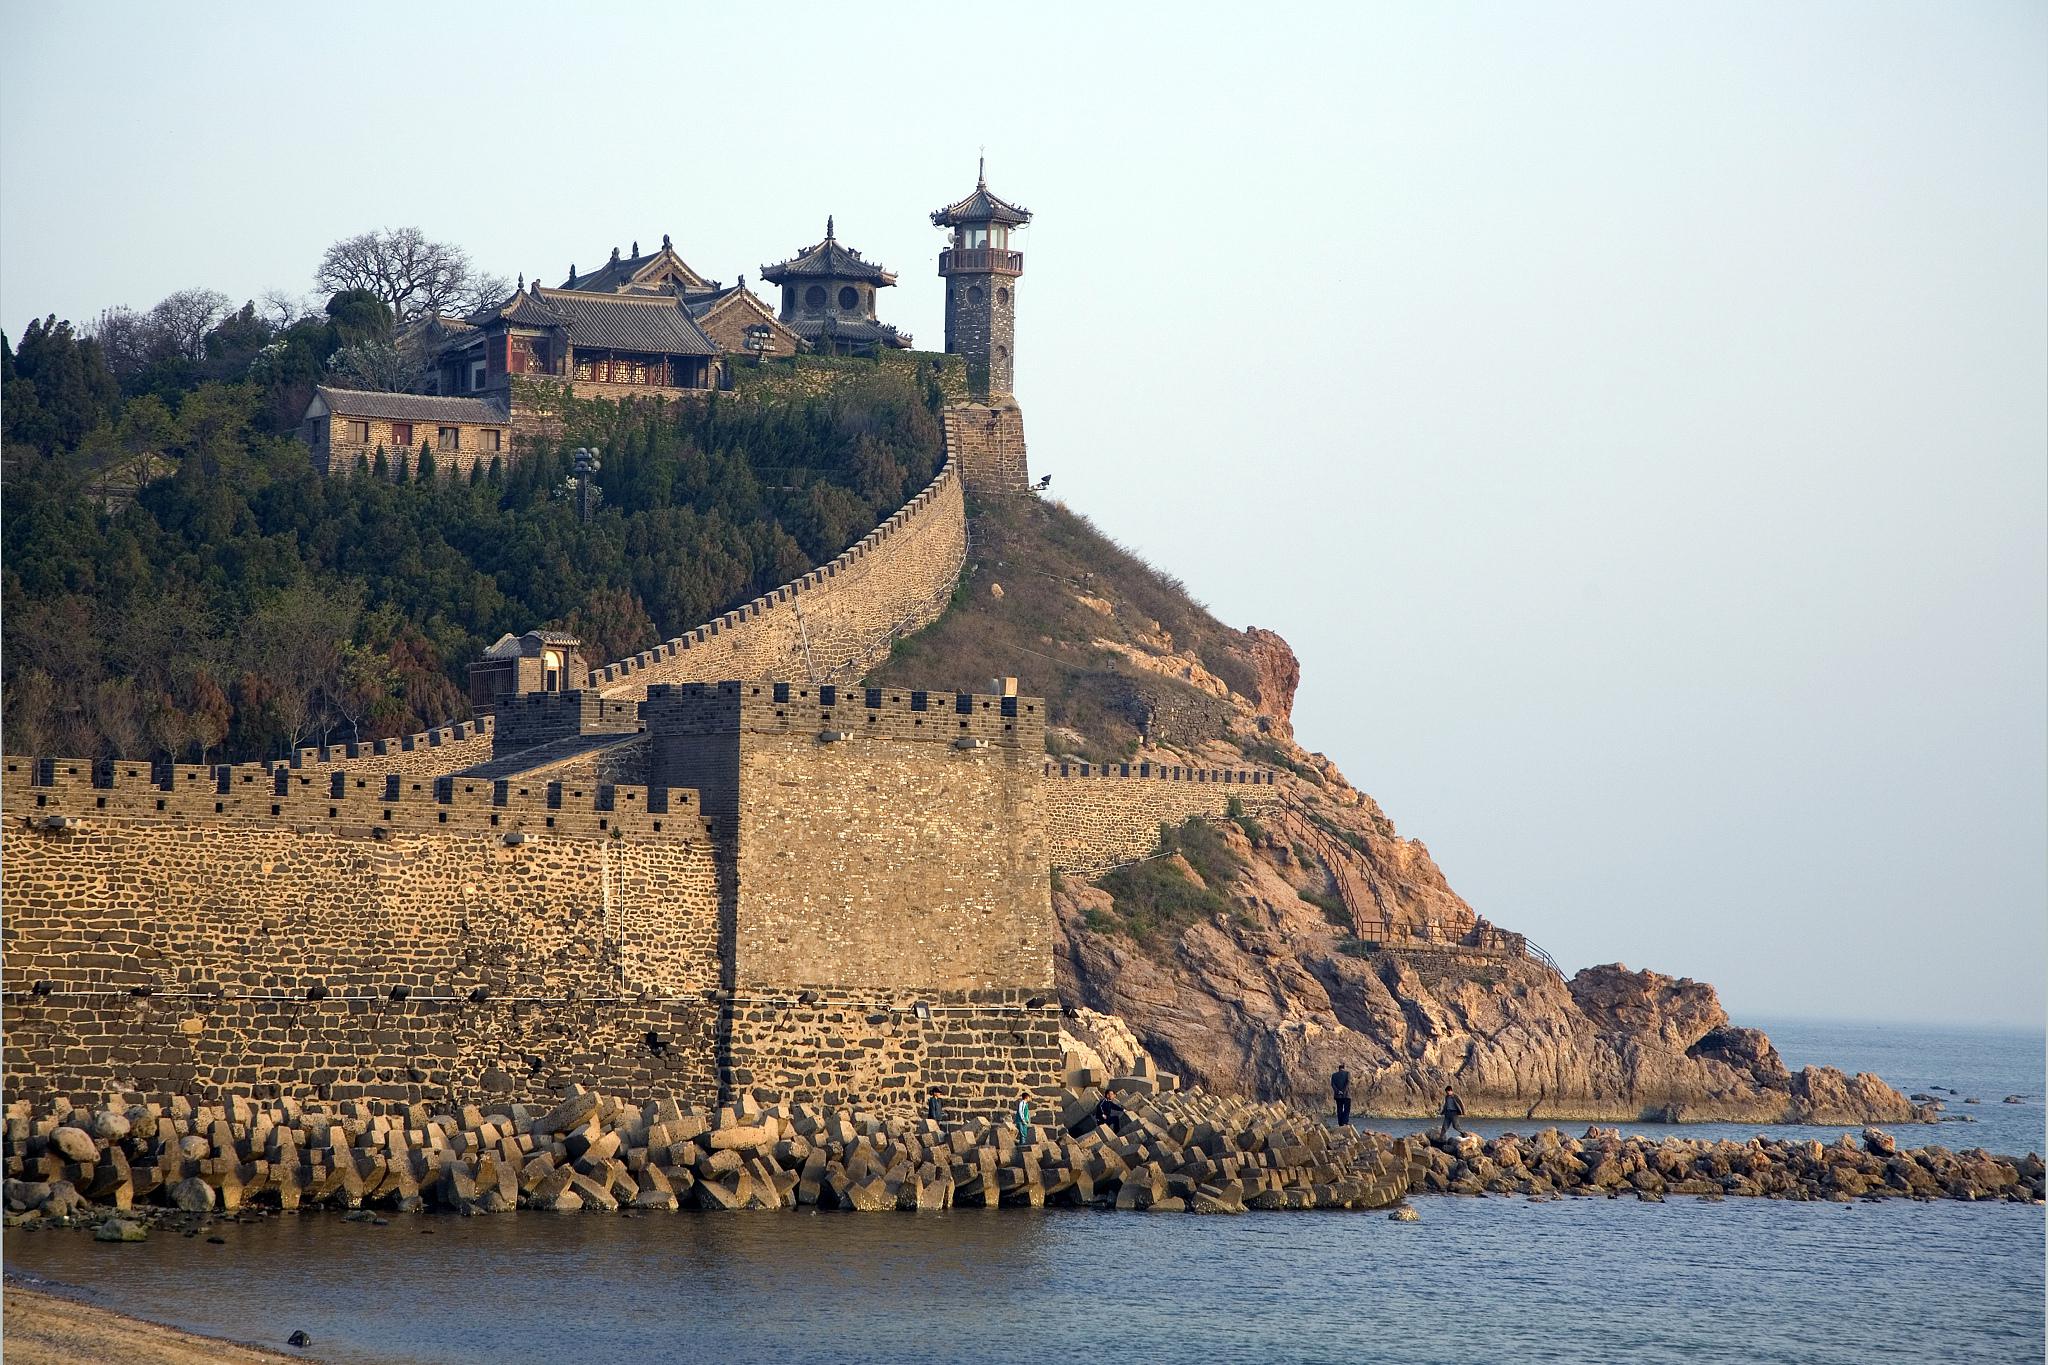 蓬莱阁,位于中国山东省烟台市蓬莱区,是中国著名的海滨风景名胜区之一